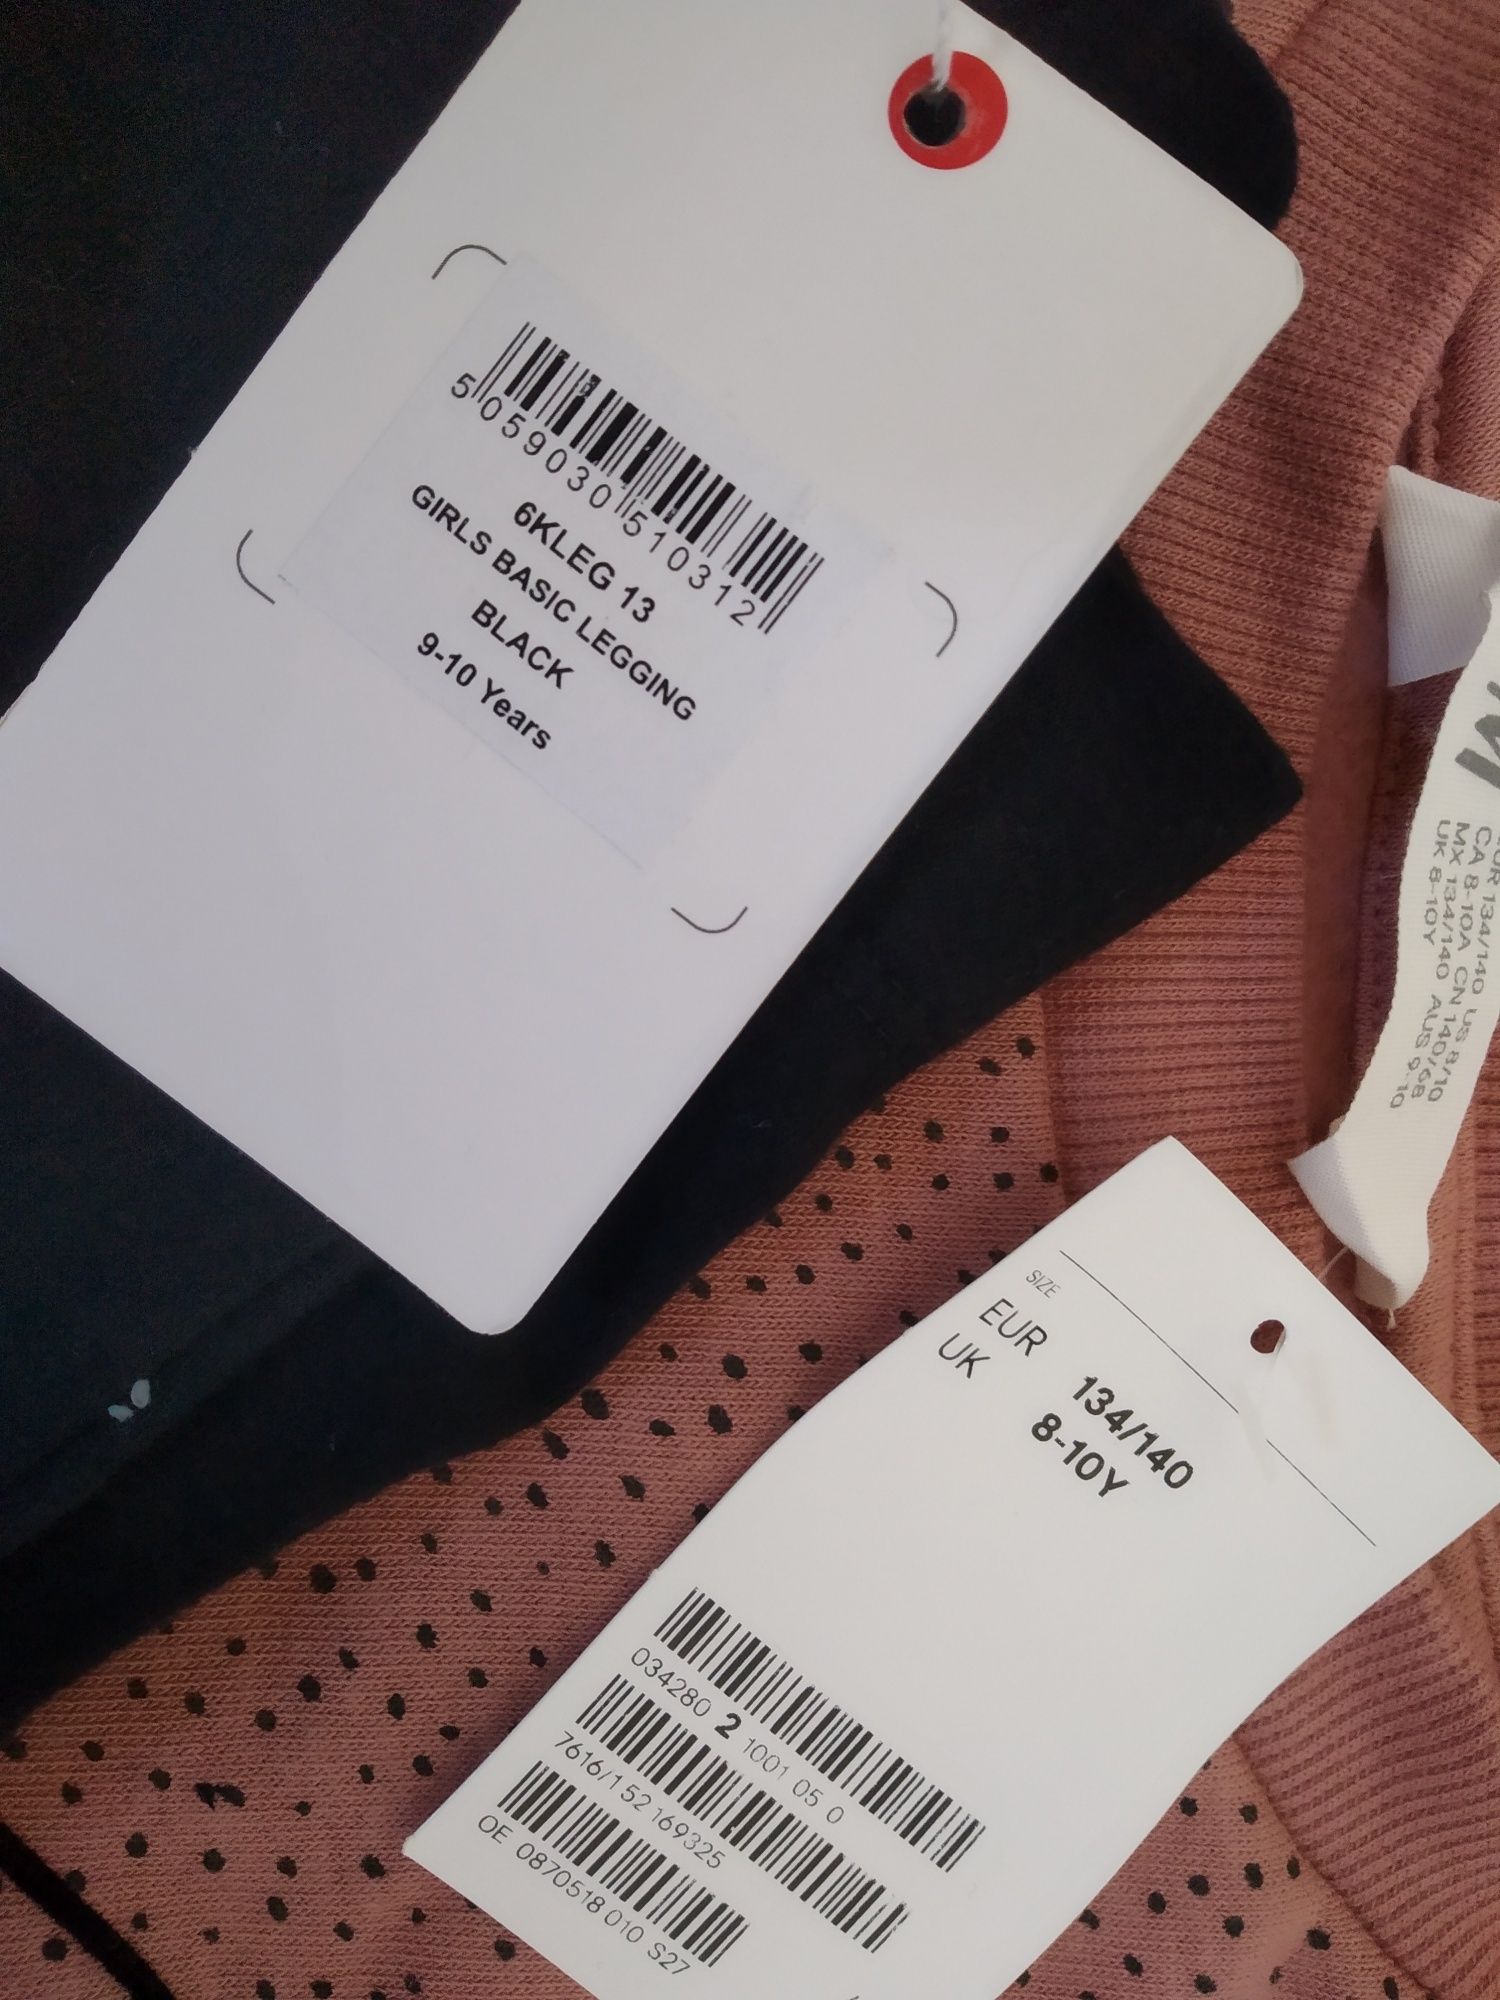 Nowa ciepła bluza z kotkiem legginsy r. 134/140 minoti  H&M